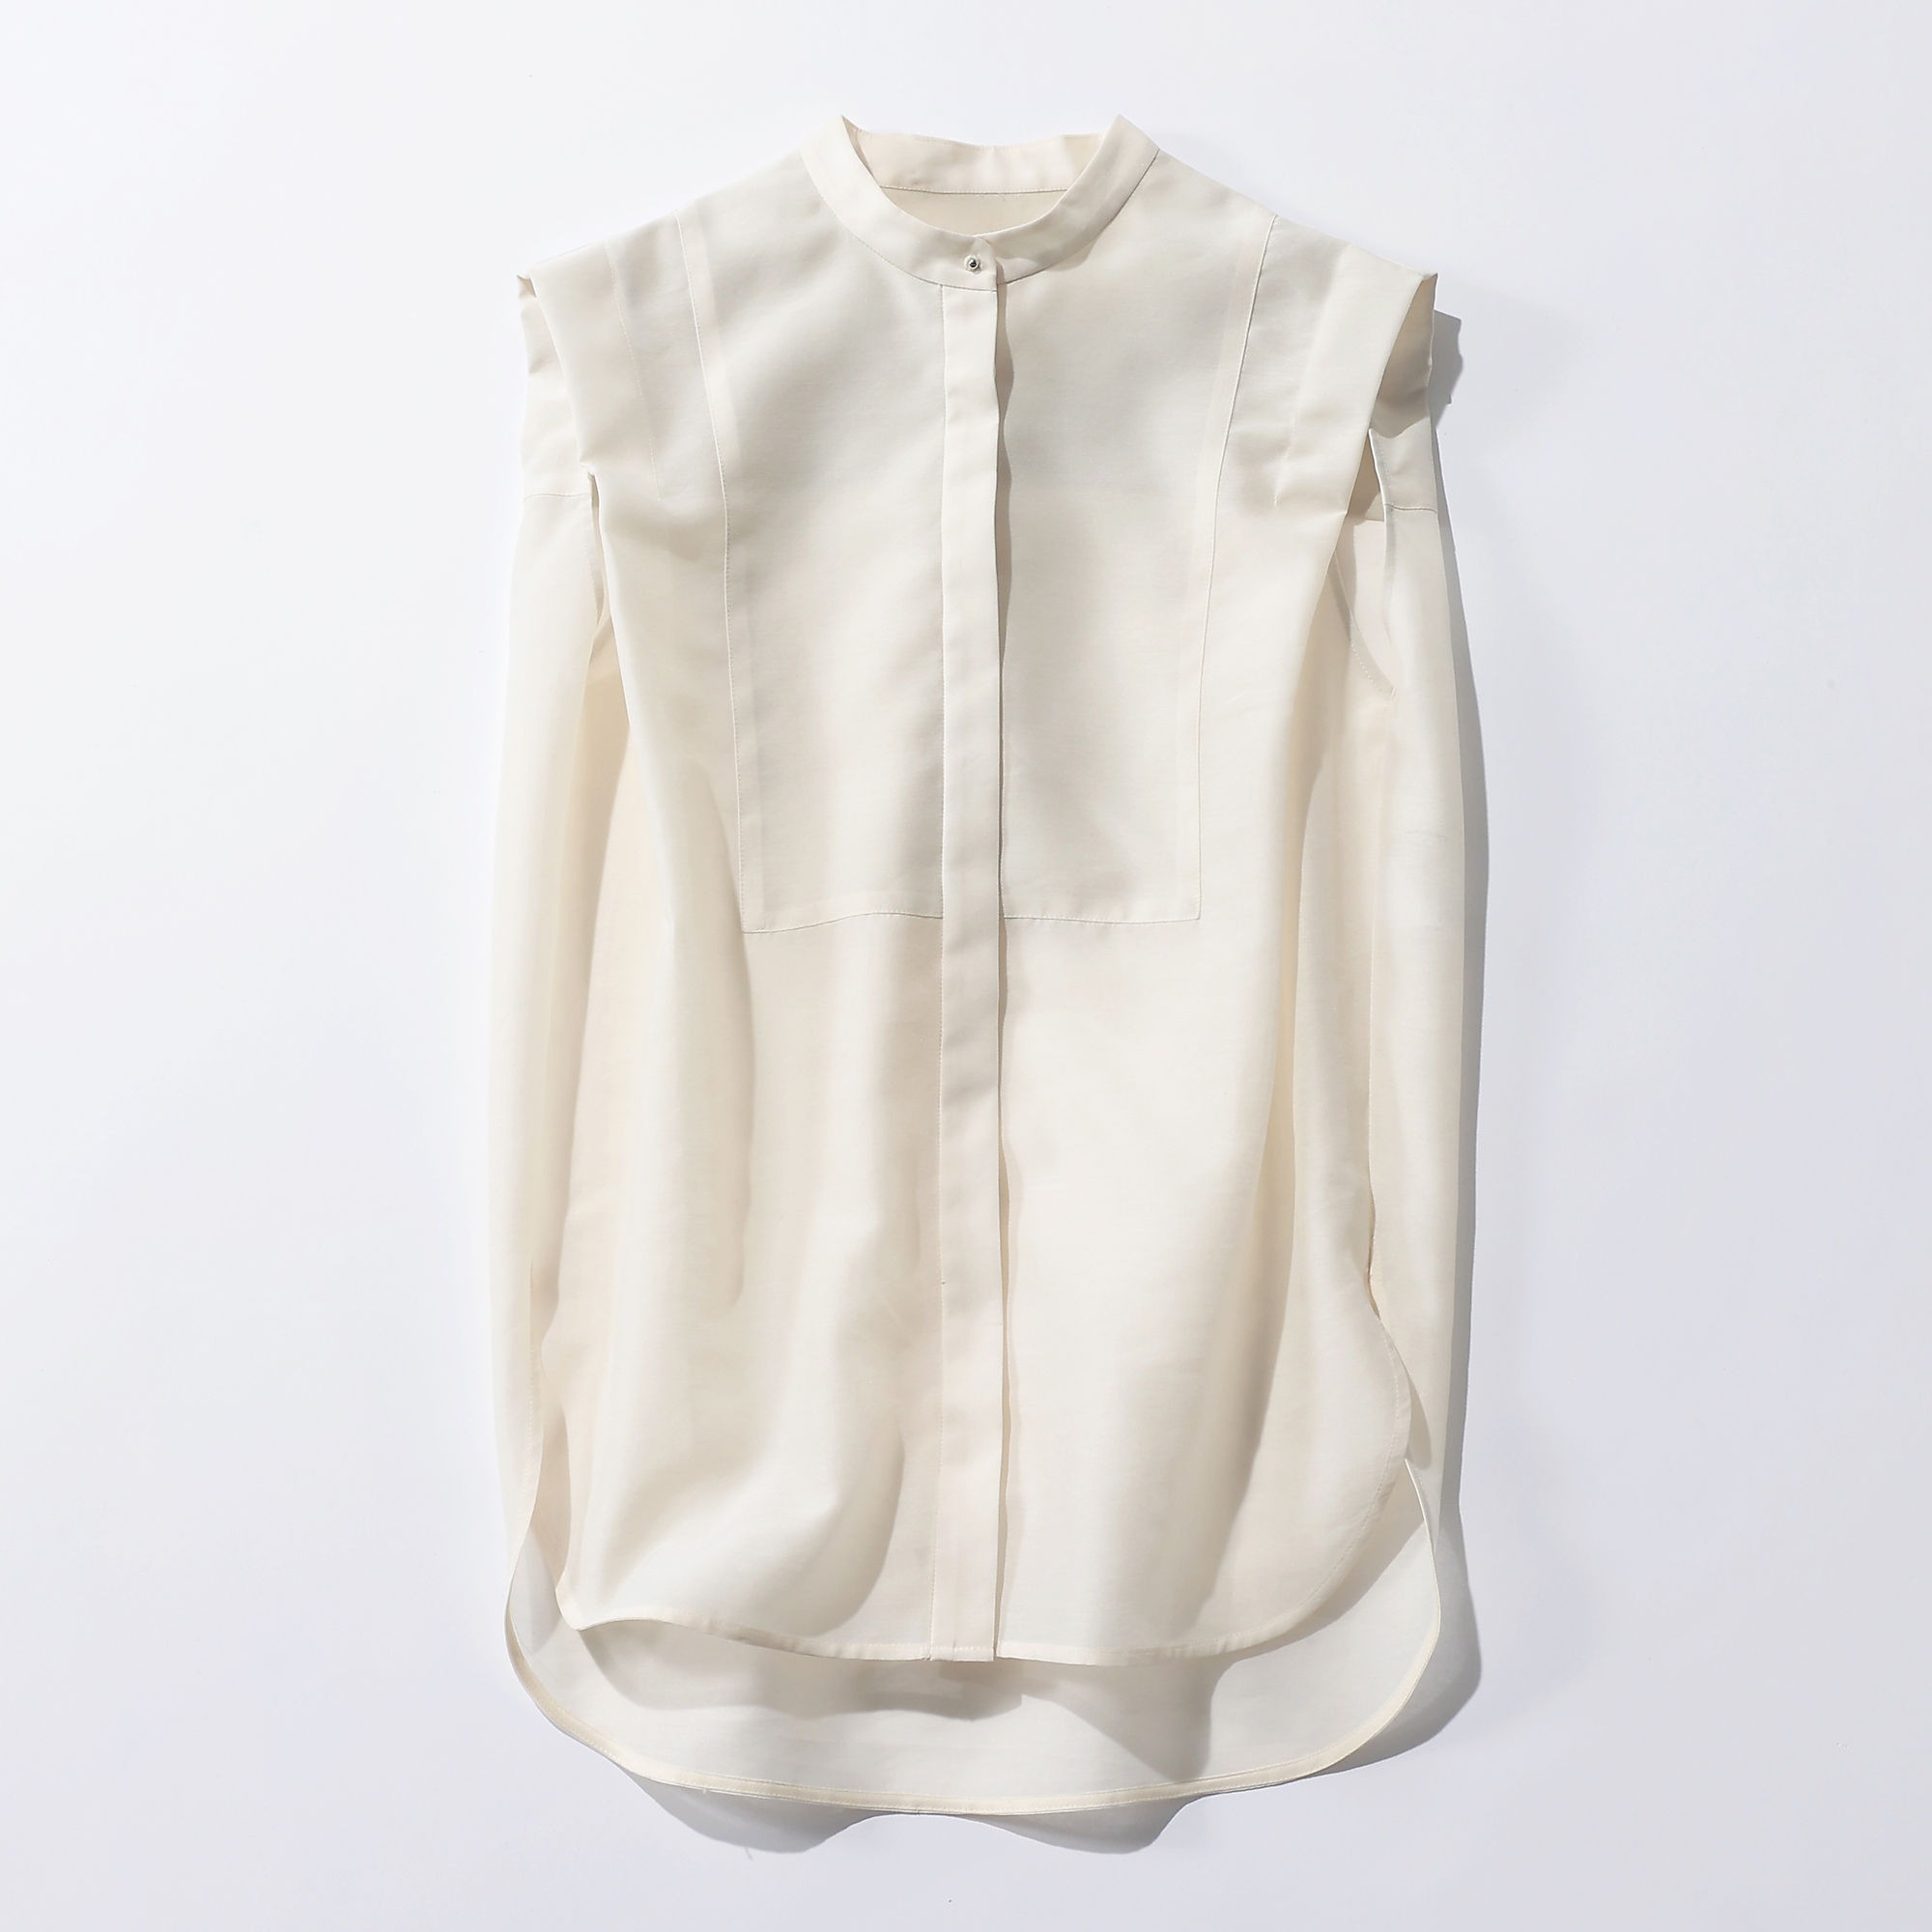 uncrave
【uncrave WHITE】SHEERシャツ
￥18,920